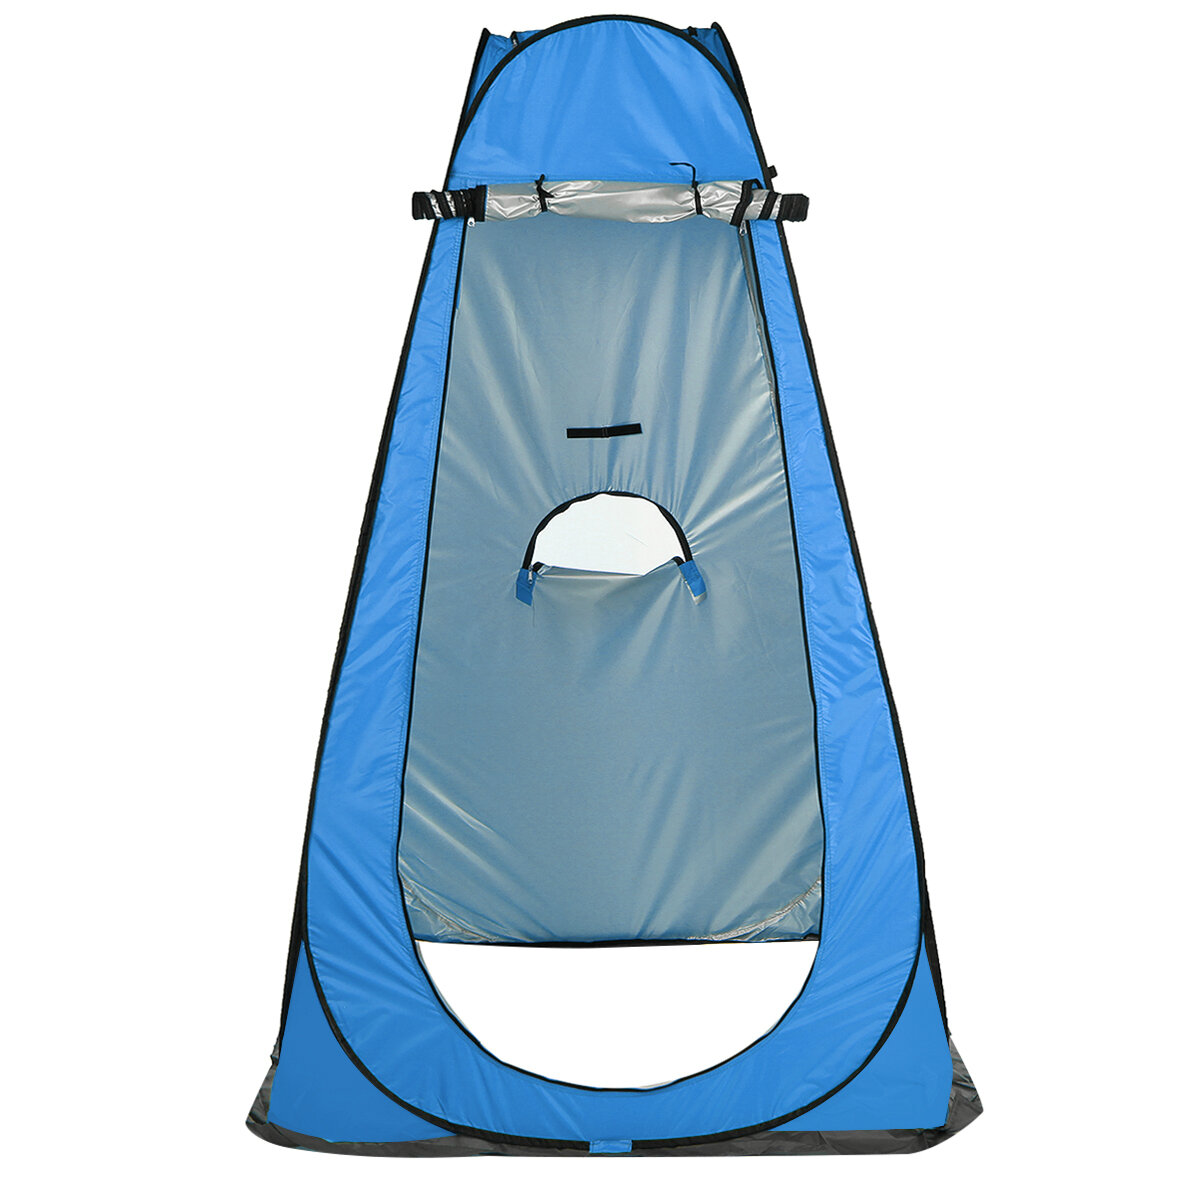 Tenda da campeggio per doccia e bagno con privacy, protezione UV e impermeabile, pieghevole e portatile.